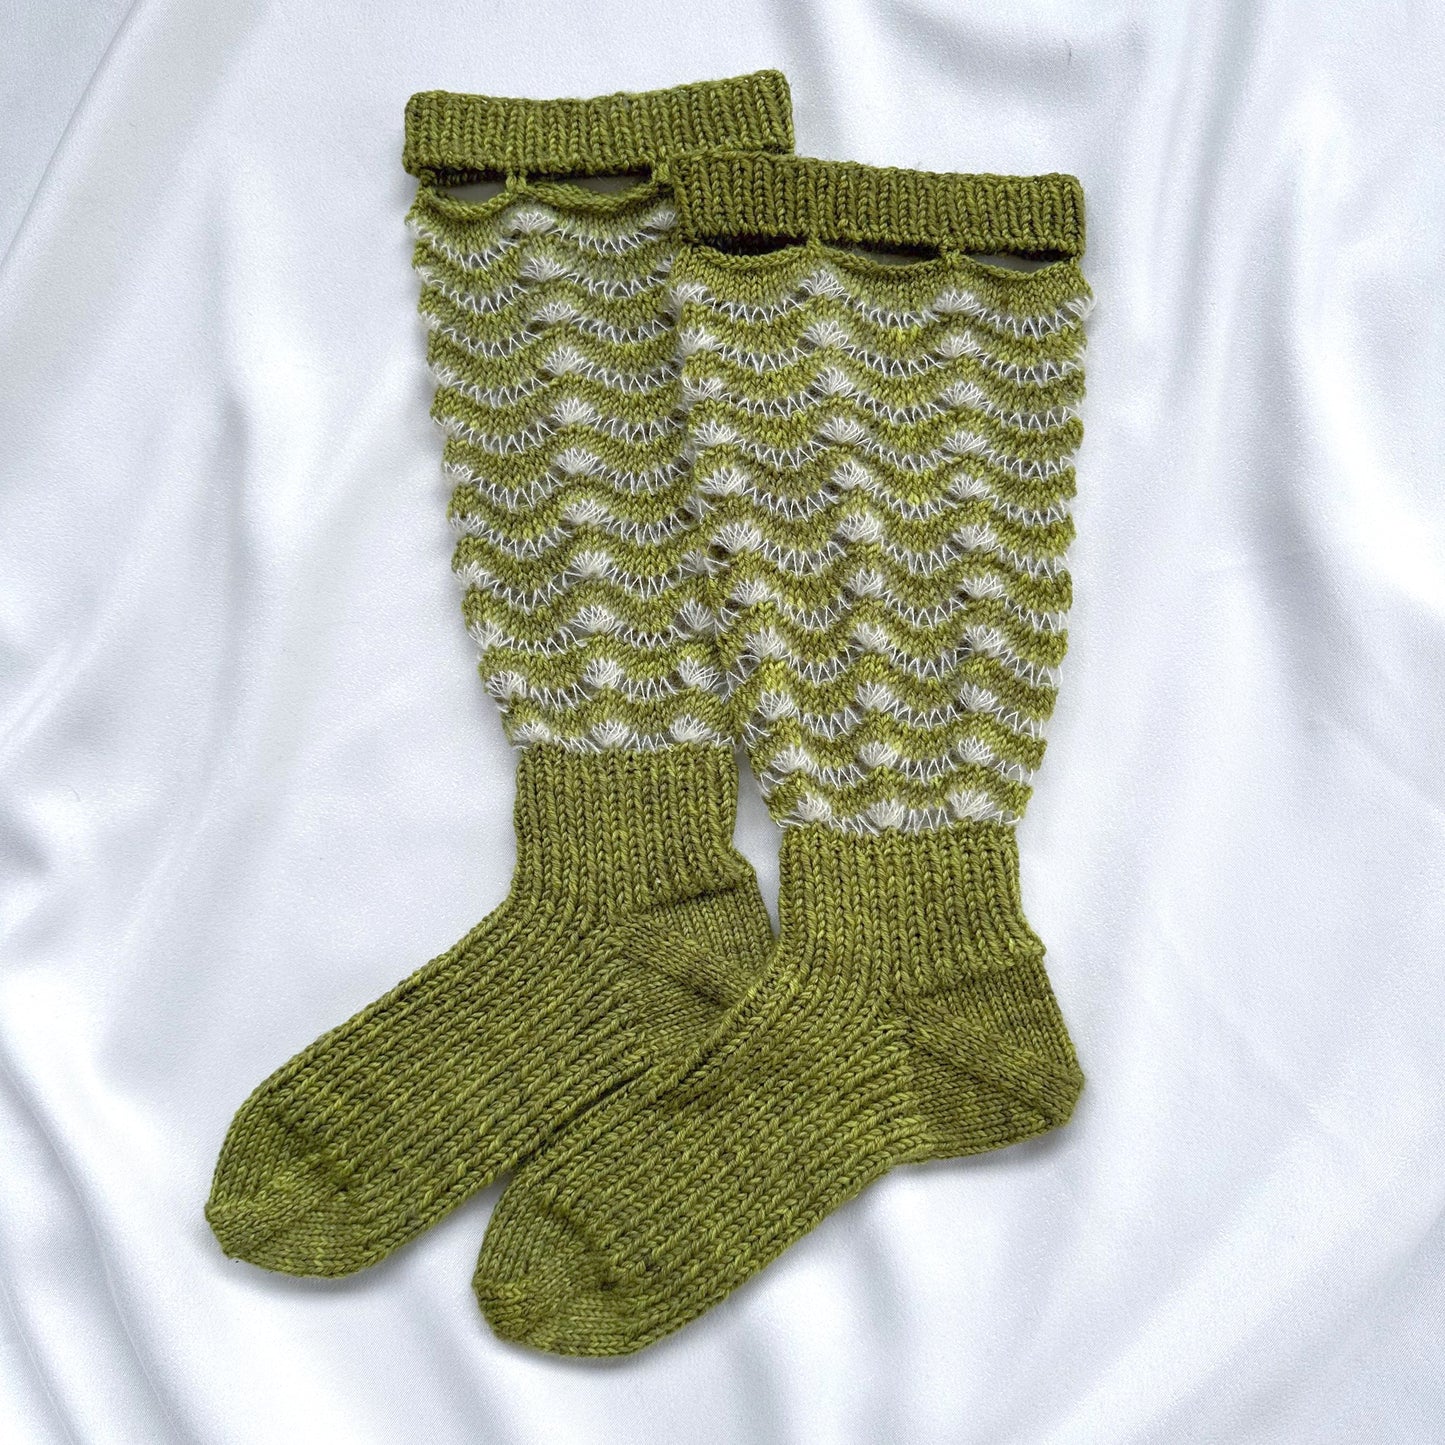 Simply Wave Long Sock Kit - Veranita & Sock Mini - Duckling & Sycamore